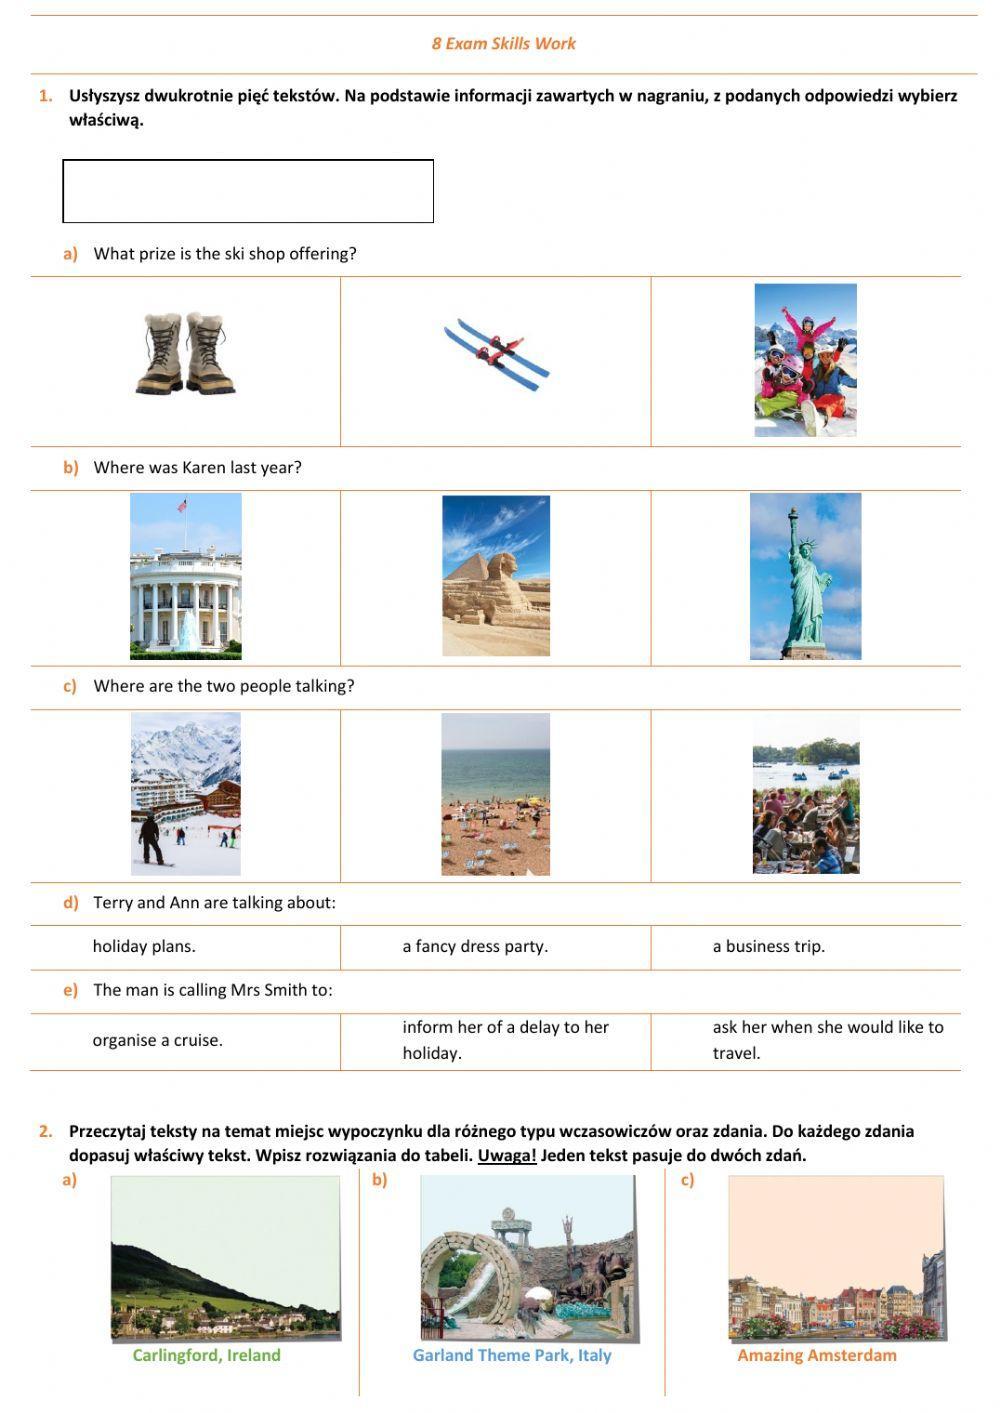 E8 U8 Podróżowanie i turystyka Exam Skills